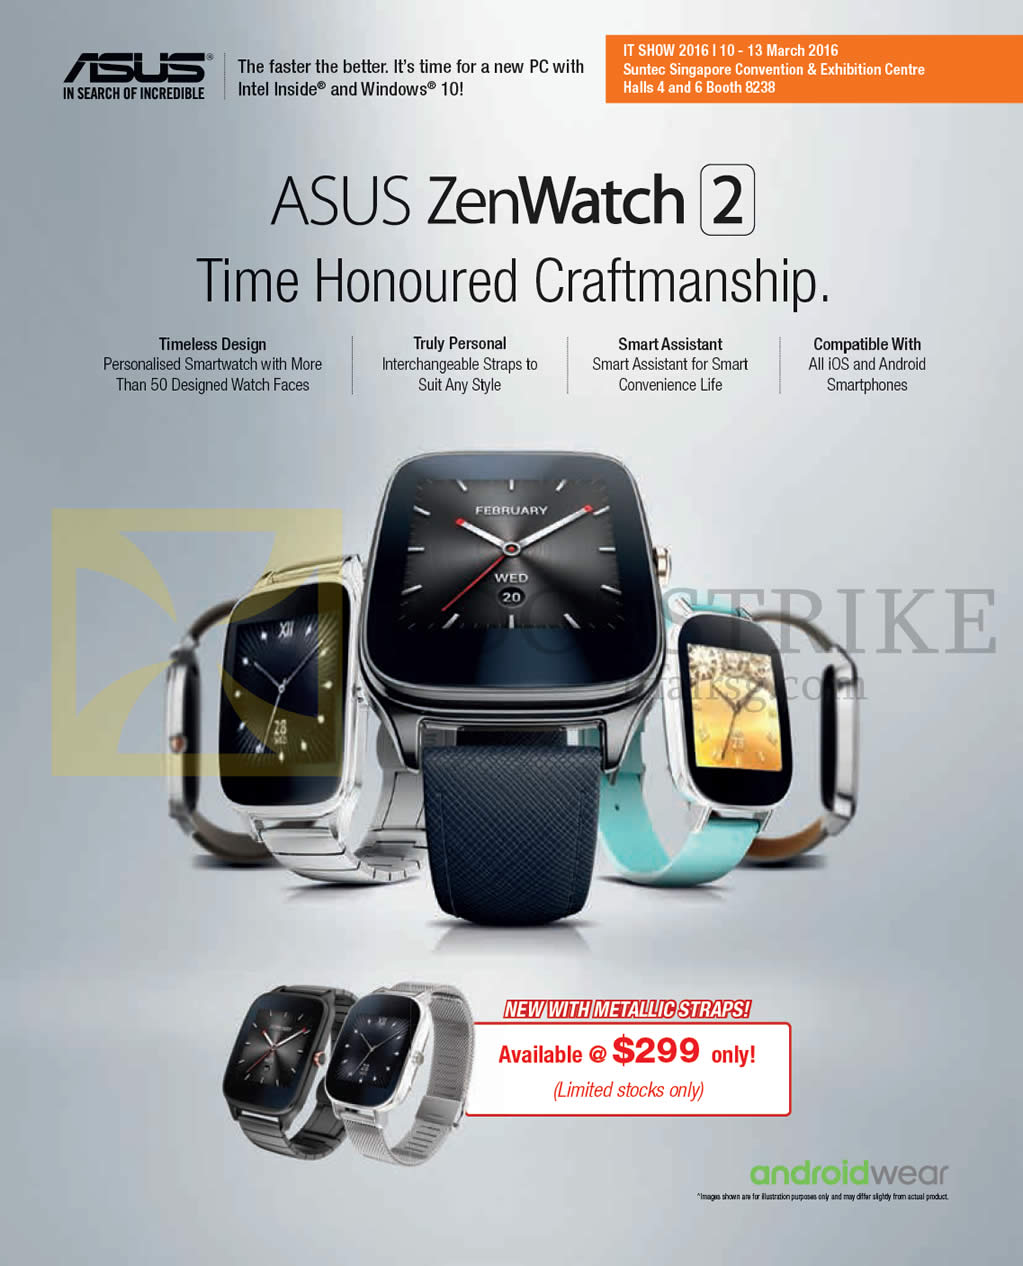 IT SHOW 2016 price list image brochure of ASUS Zenwatch 2